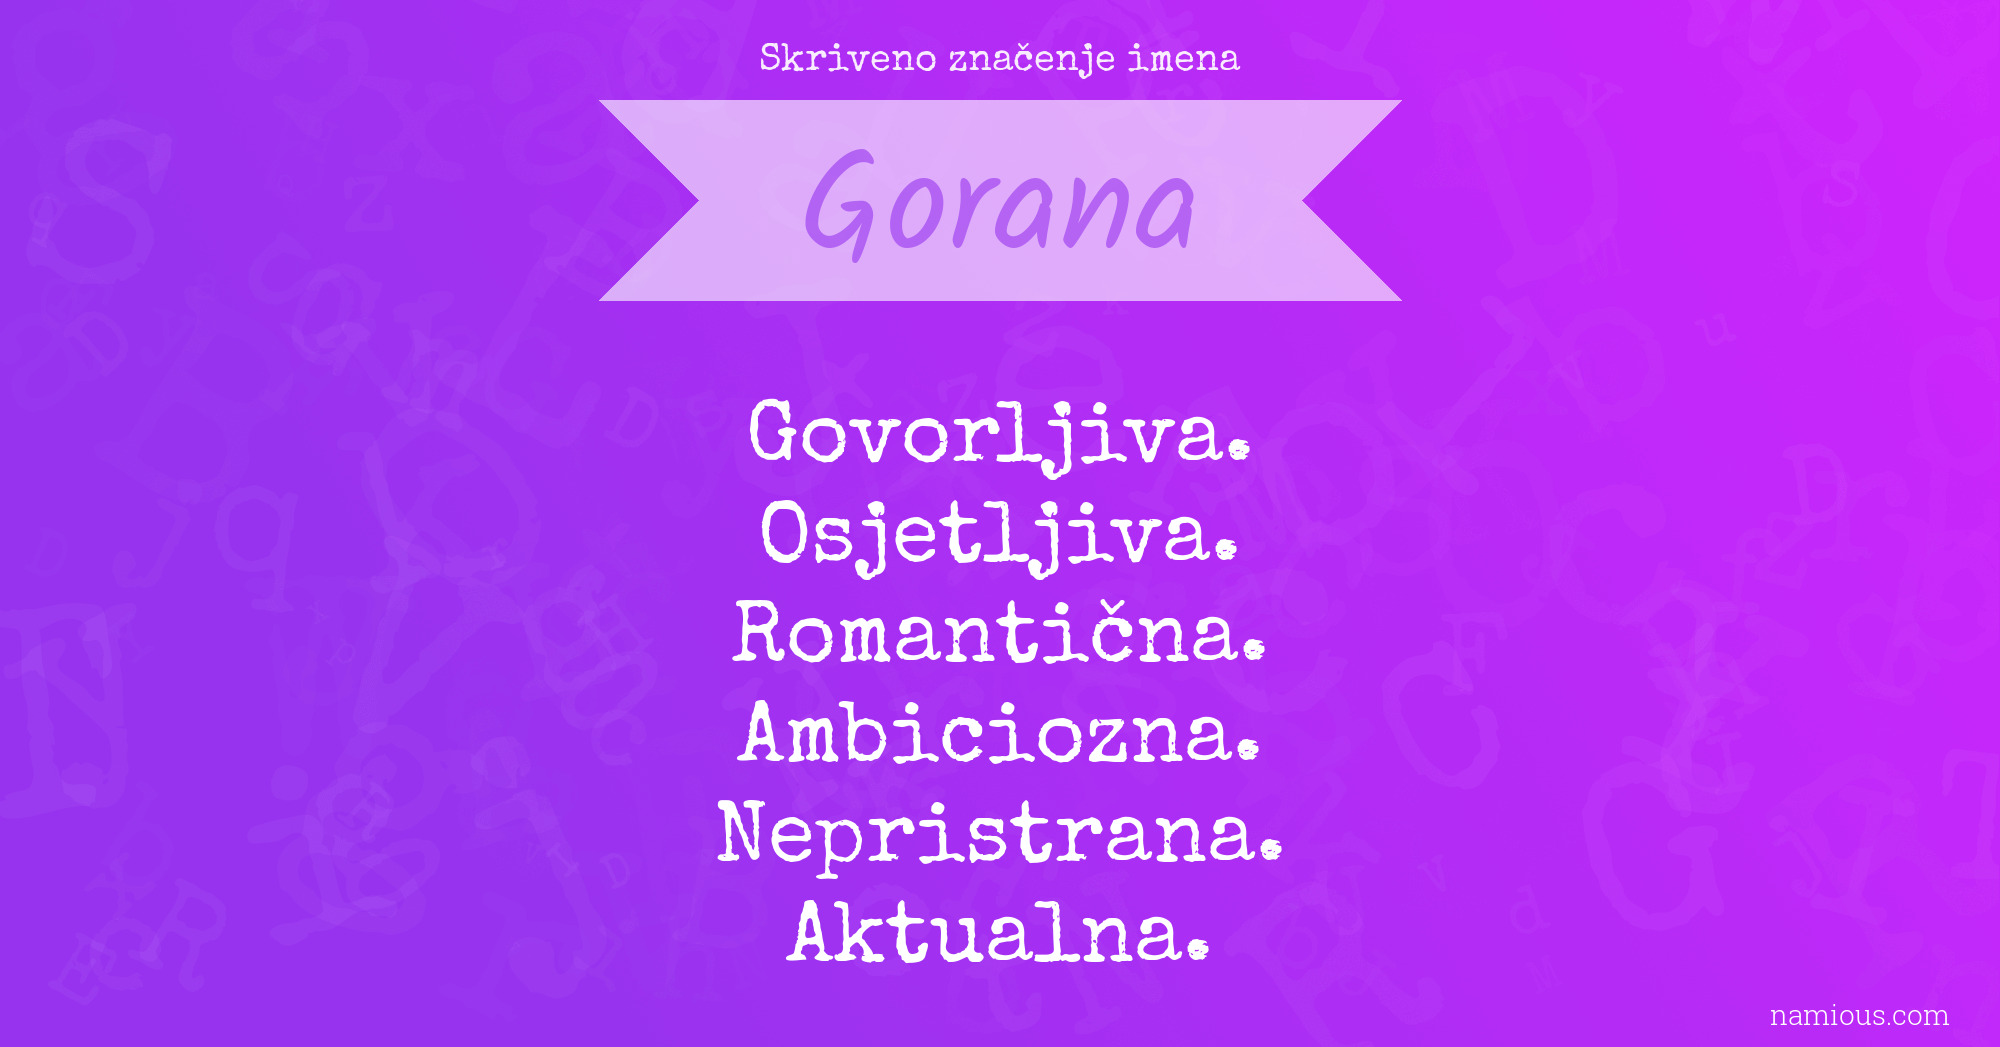 Skriveno značenje imena Gorana